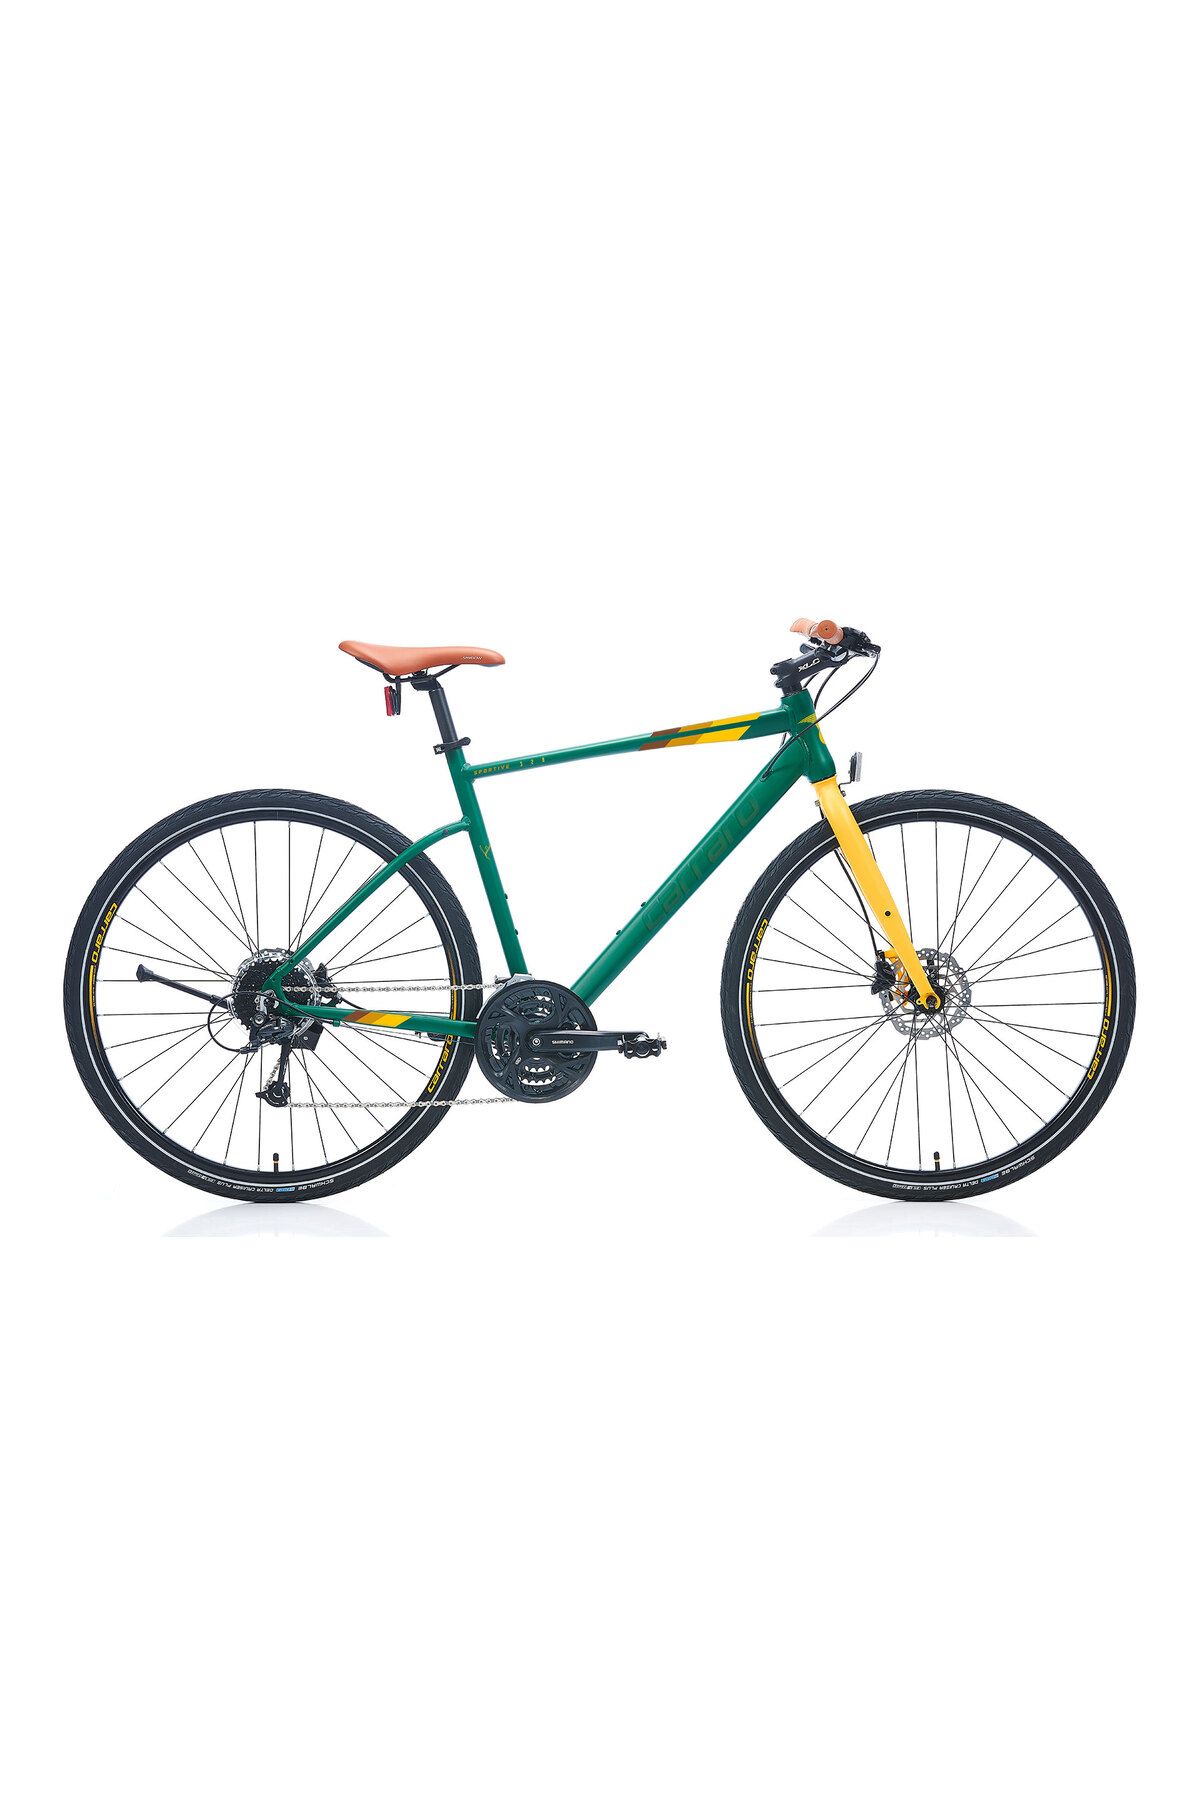 Carraro Sportive 328 56 cm  27 Vites Hidrolik Disk Fren Mat Koyu Yeşil-Sarı-Kahverengi Erkek Şehir Bisikleti